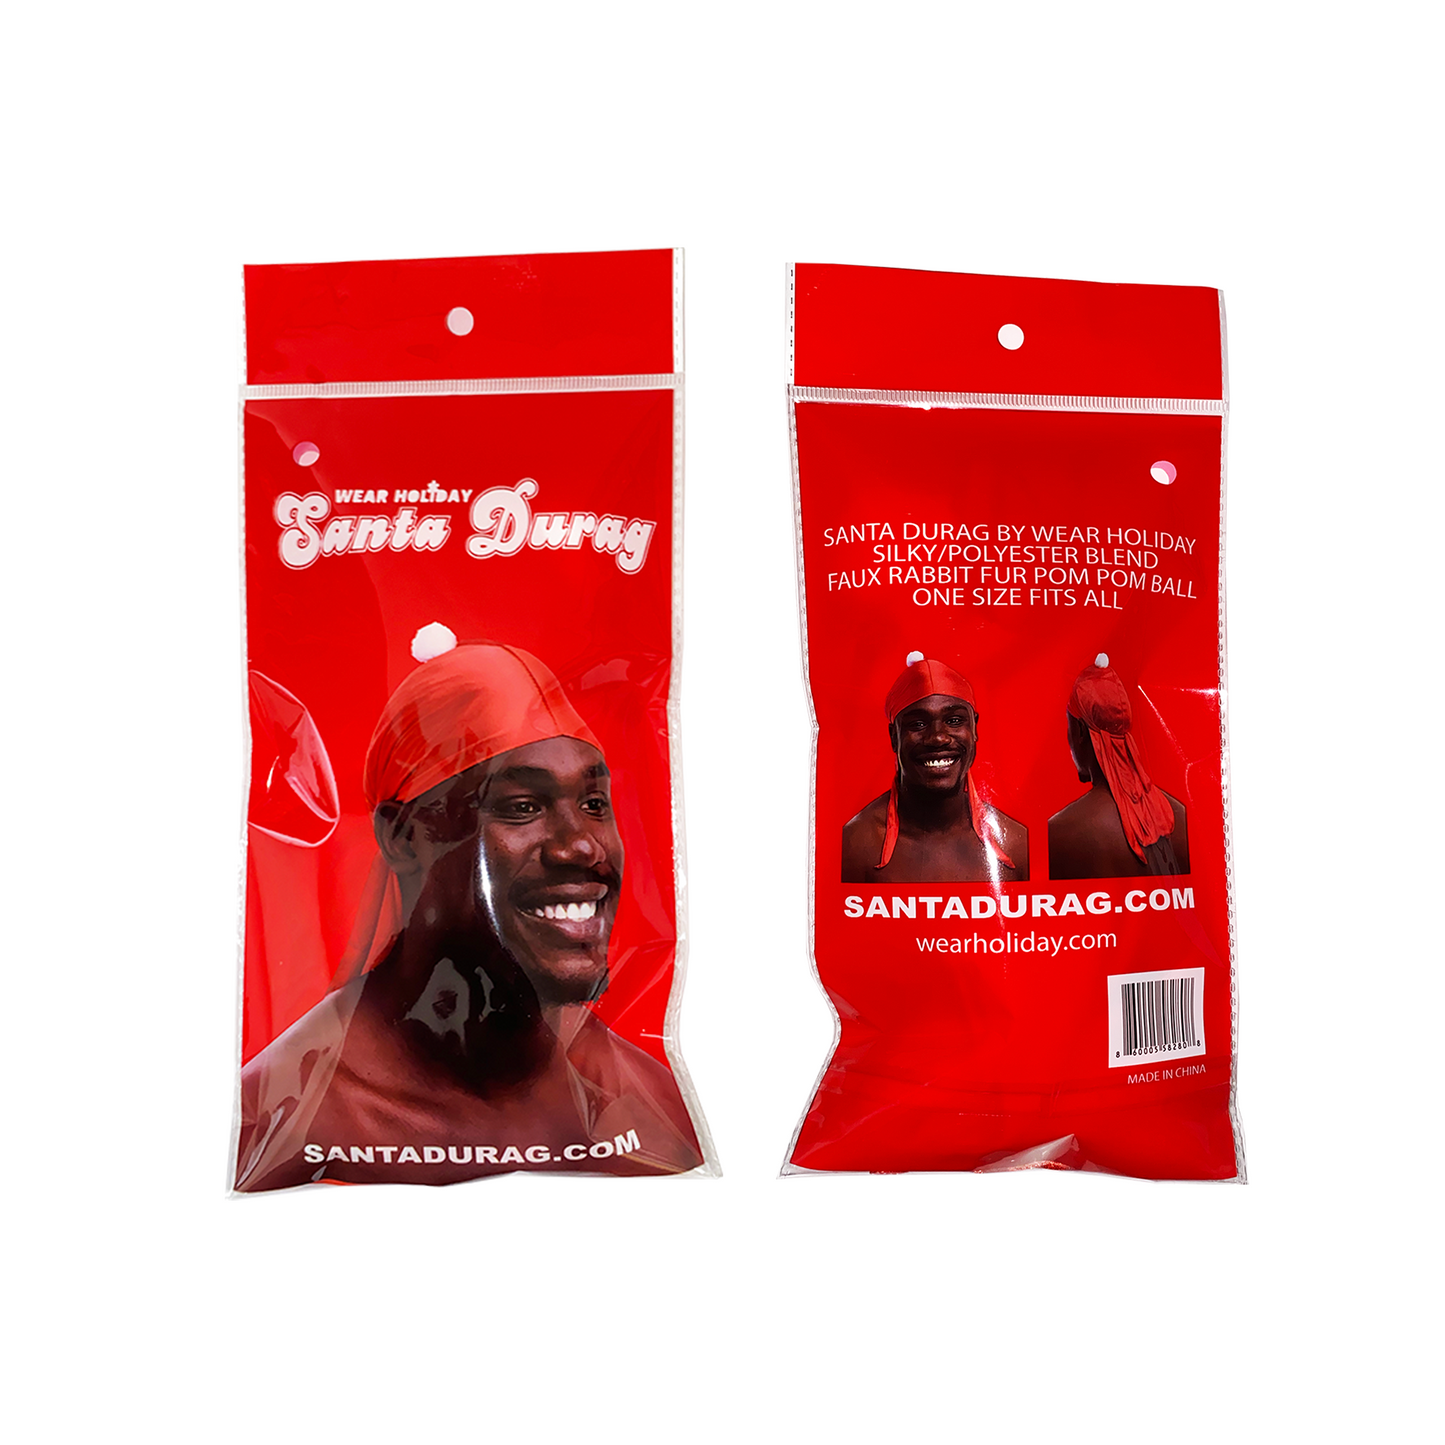 Santa Durag Packaging